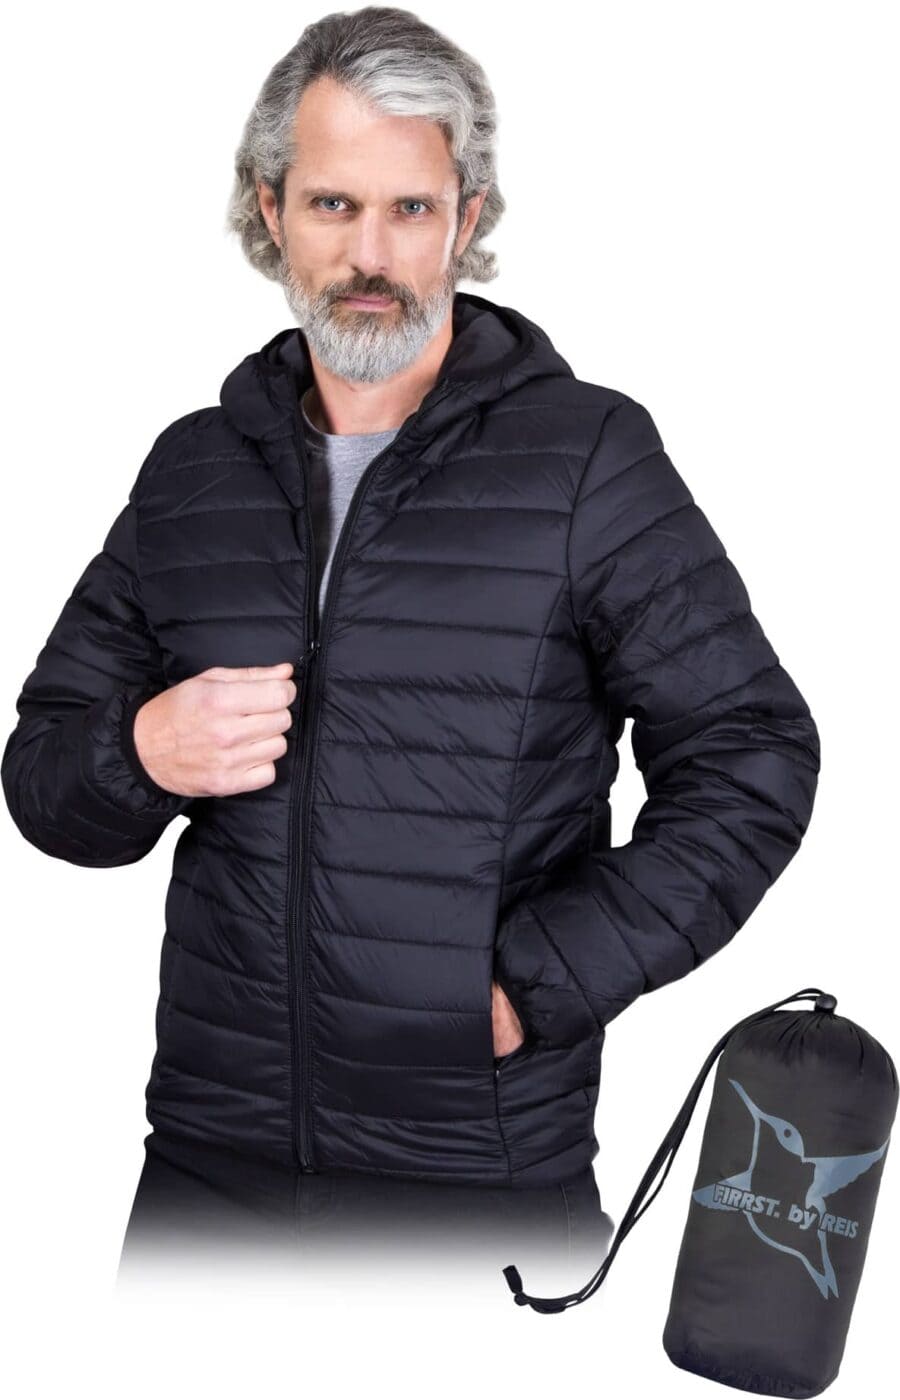 Ľahká pracovná bunda s kapucňou DART BLACK